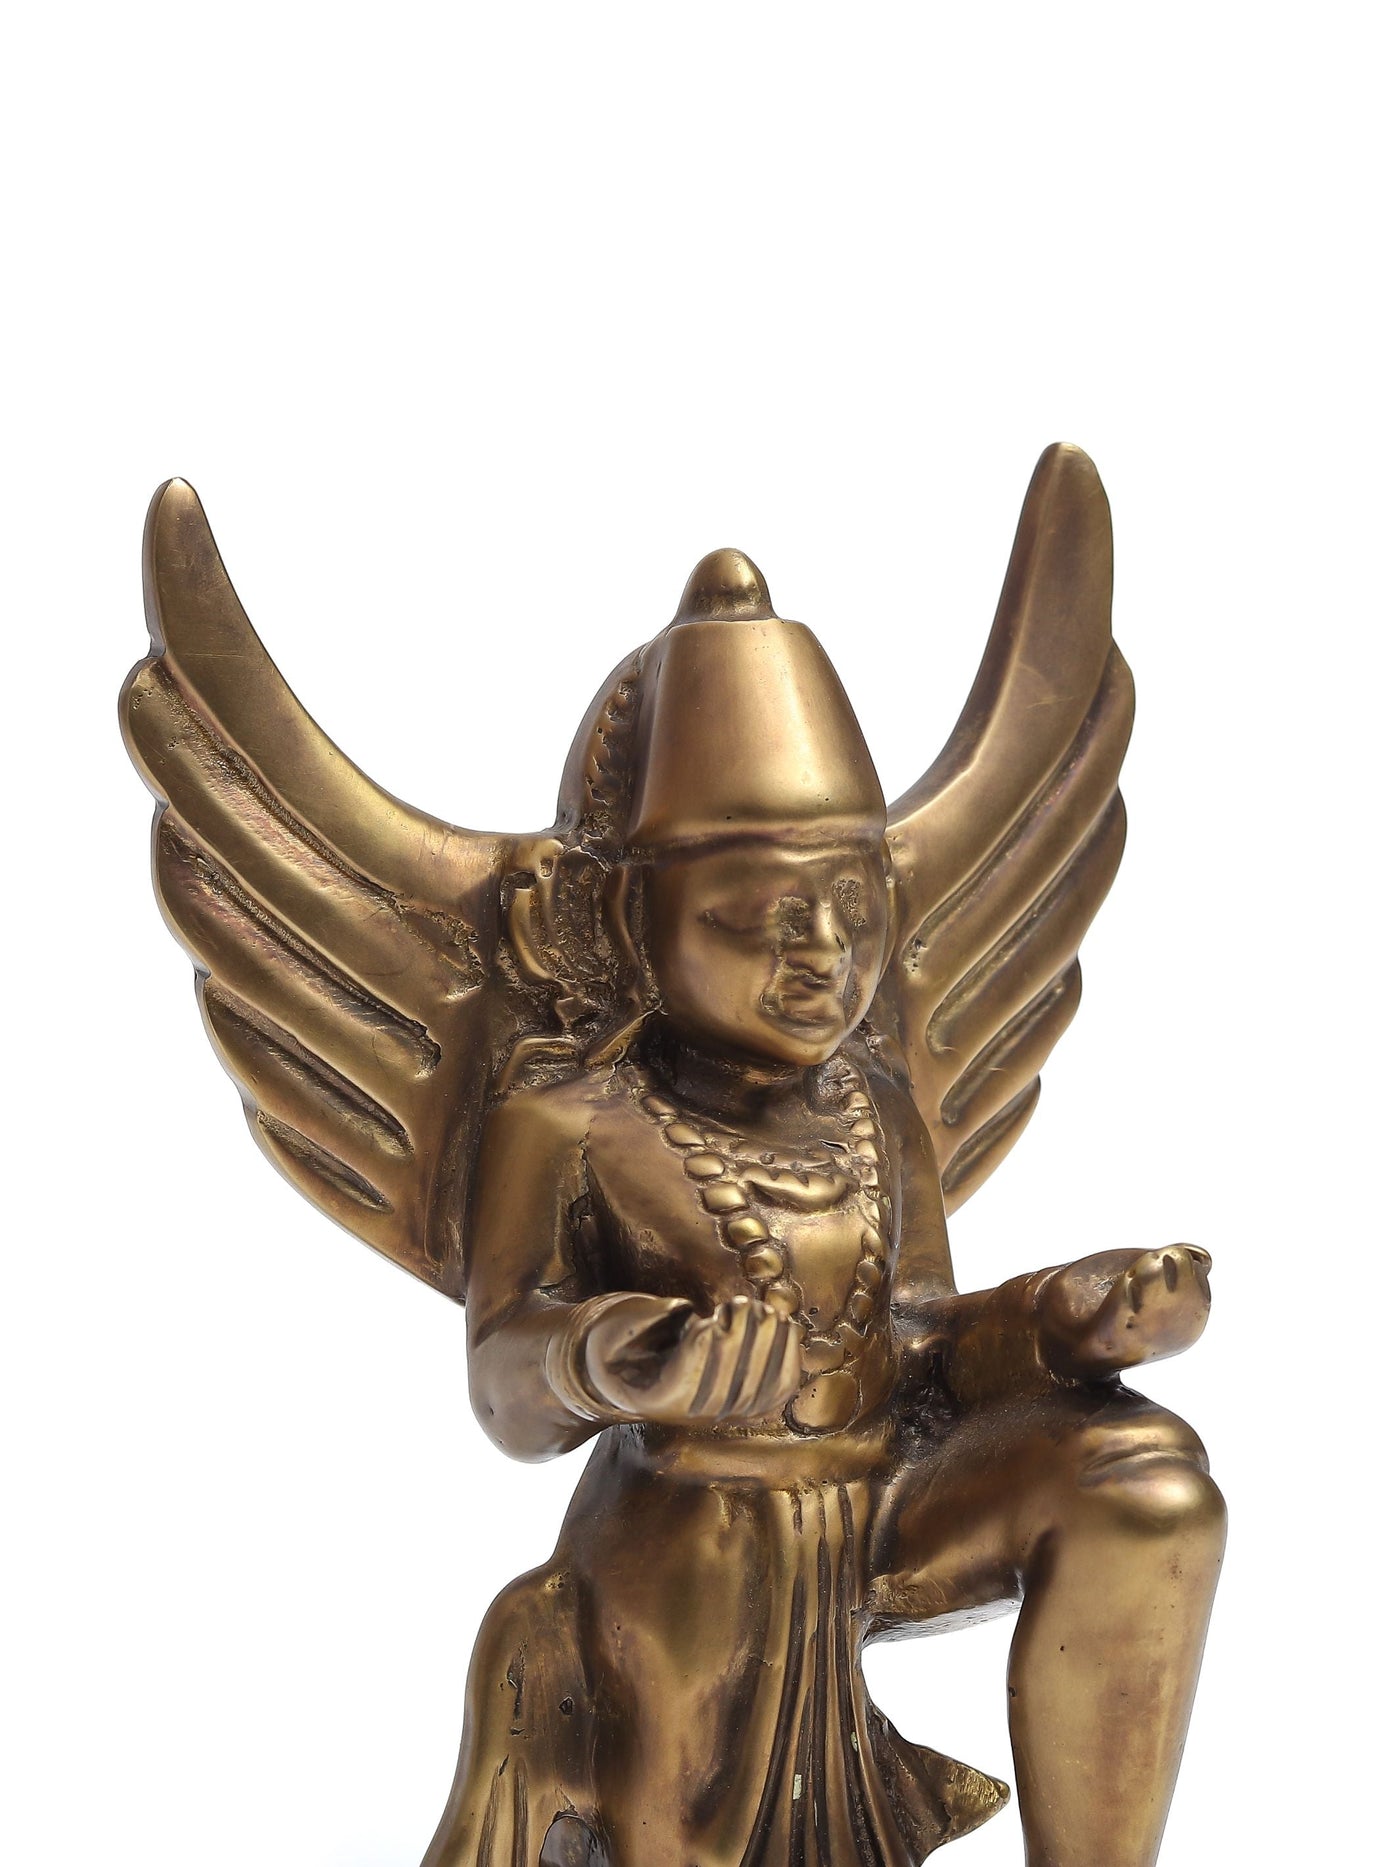 Gaurda Sculpture brass